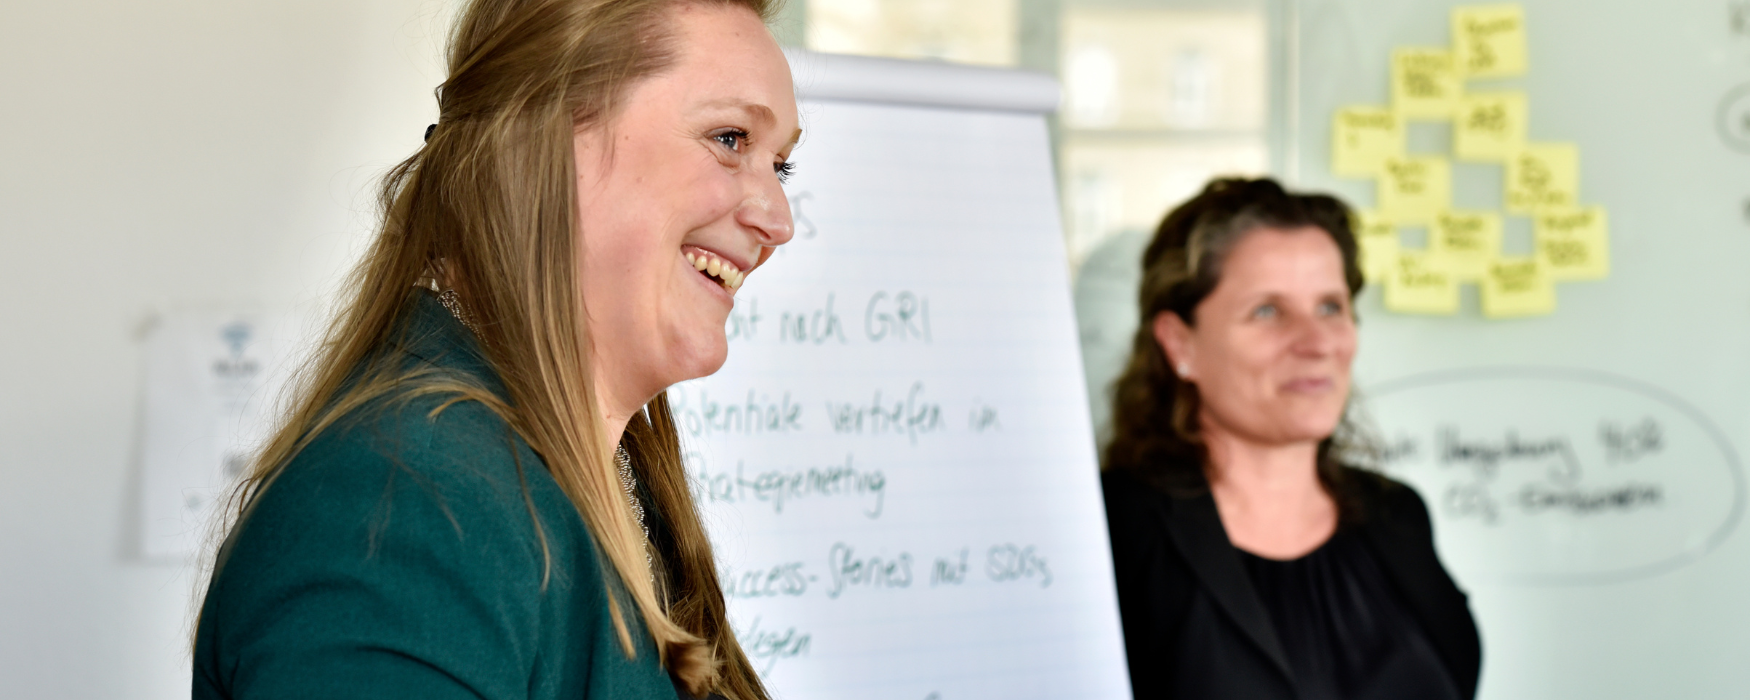 Unsere Gründerinnen Patricia und Alice leiten den Workshop "ESG-Check für Gründerinnen"